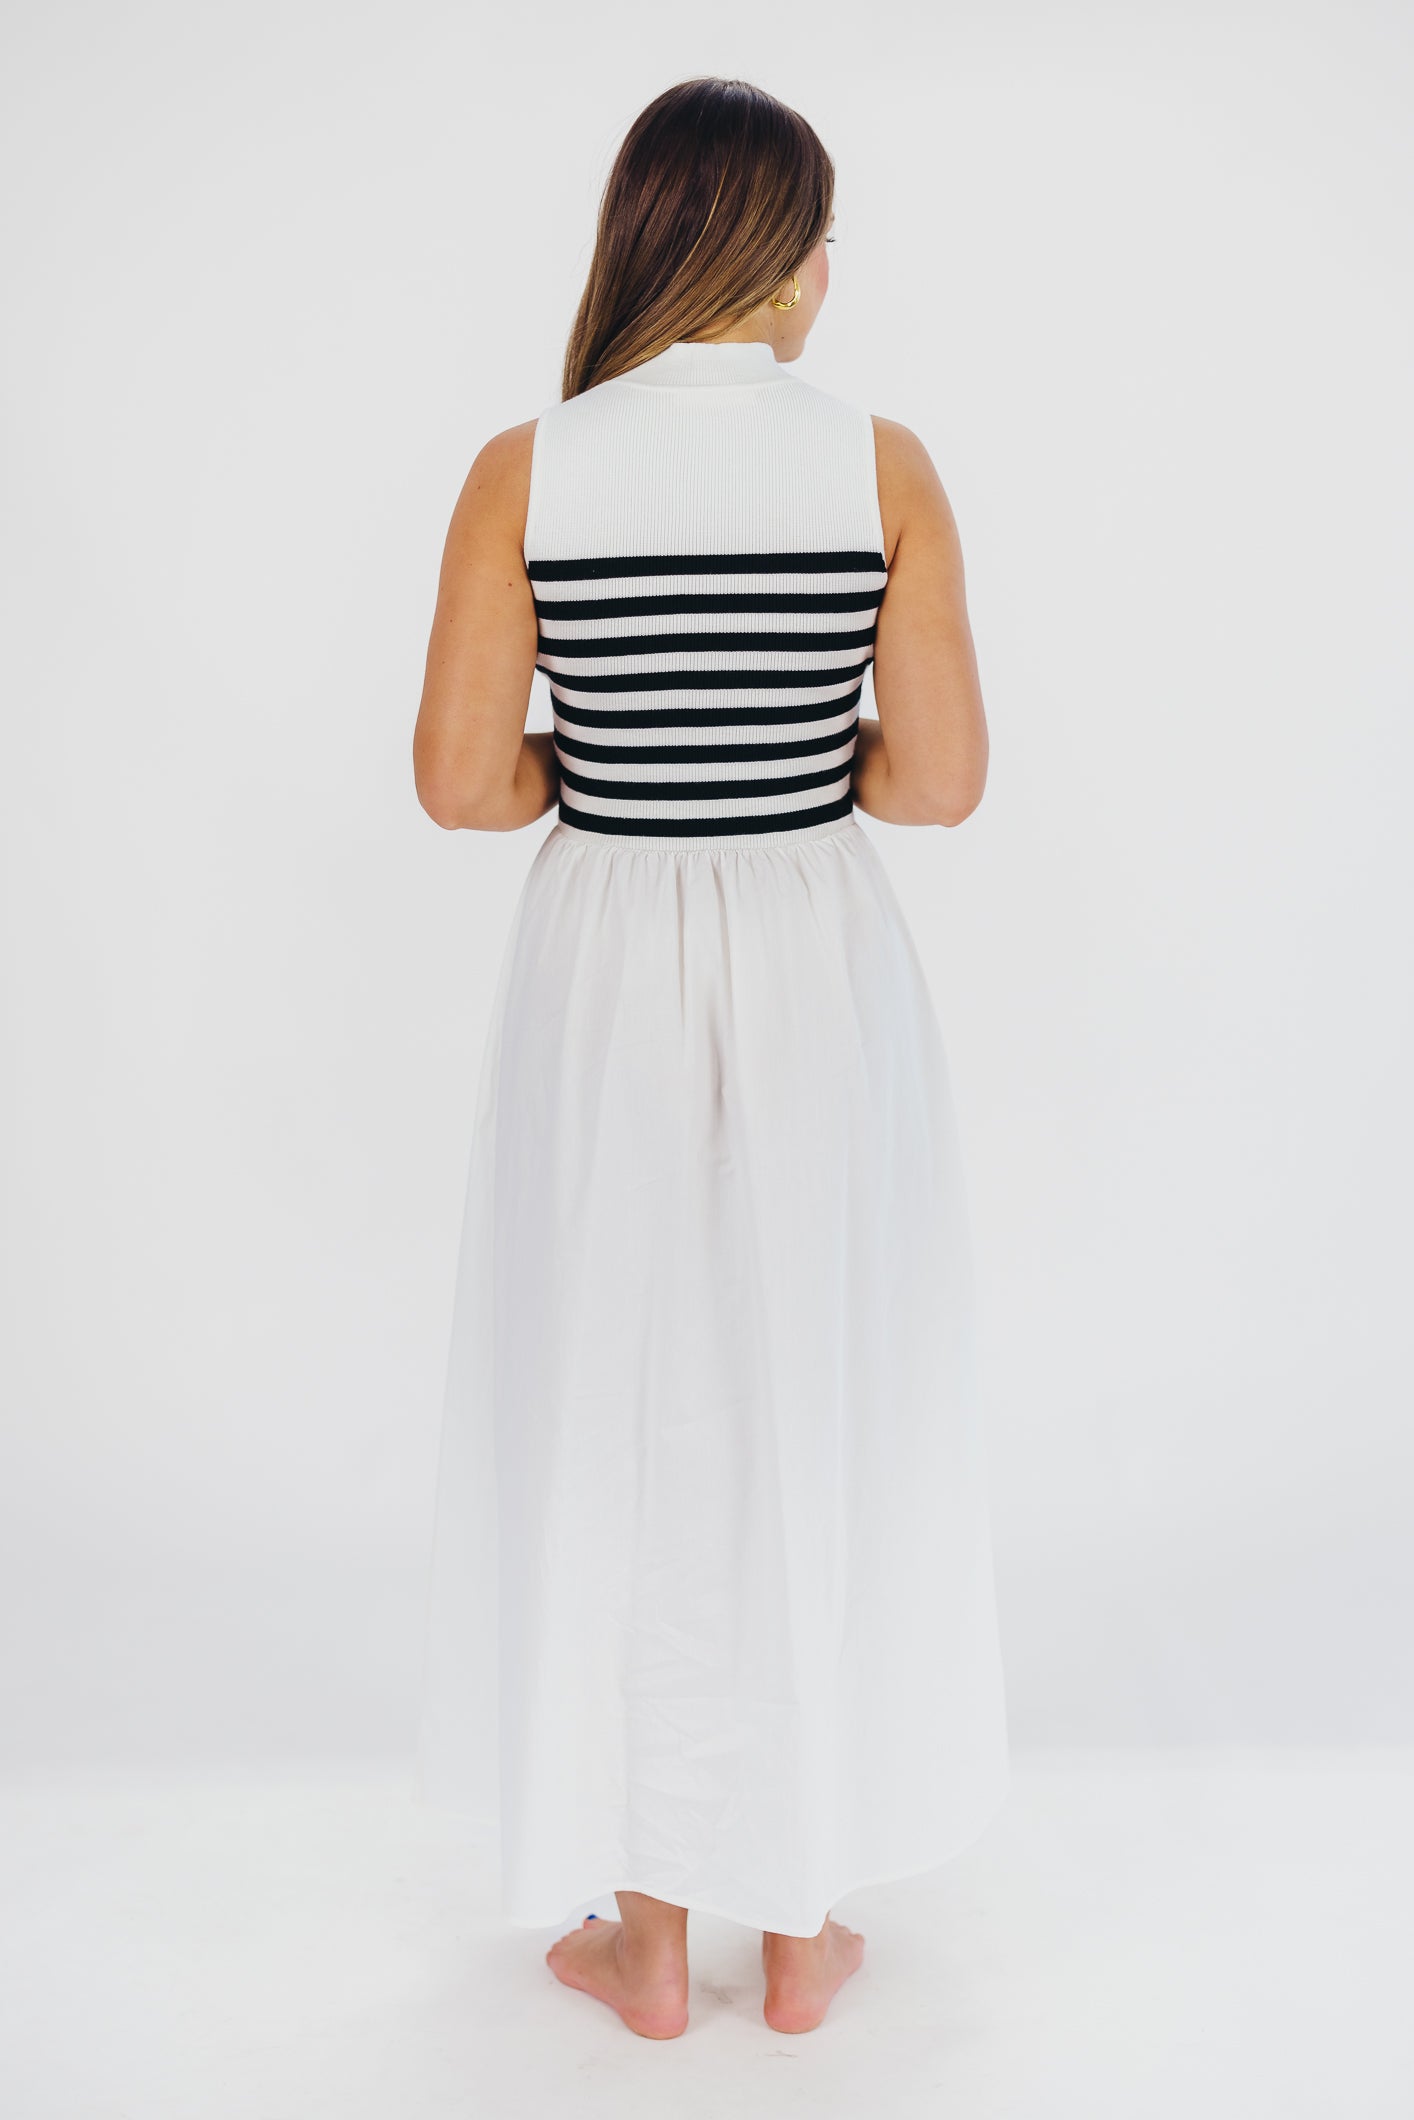 Tia Knit Maxi Dress in White Stripe